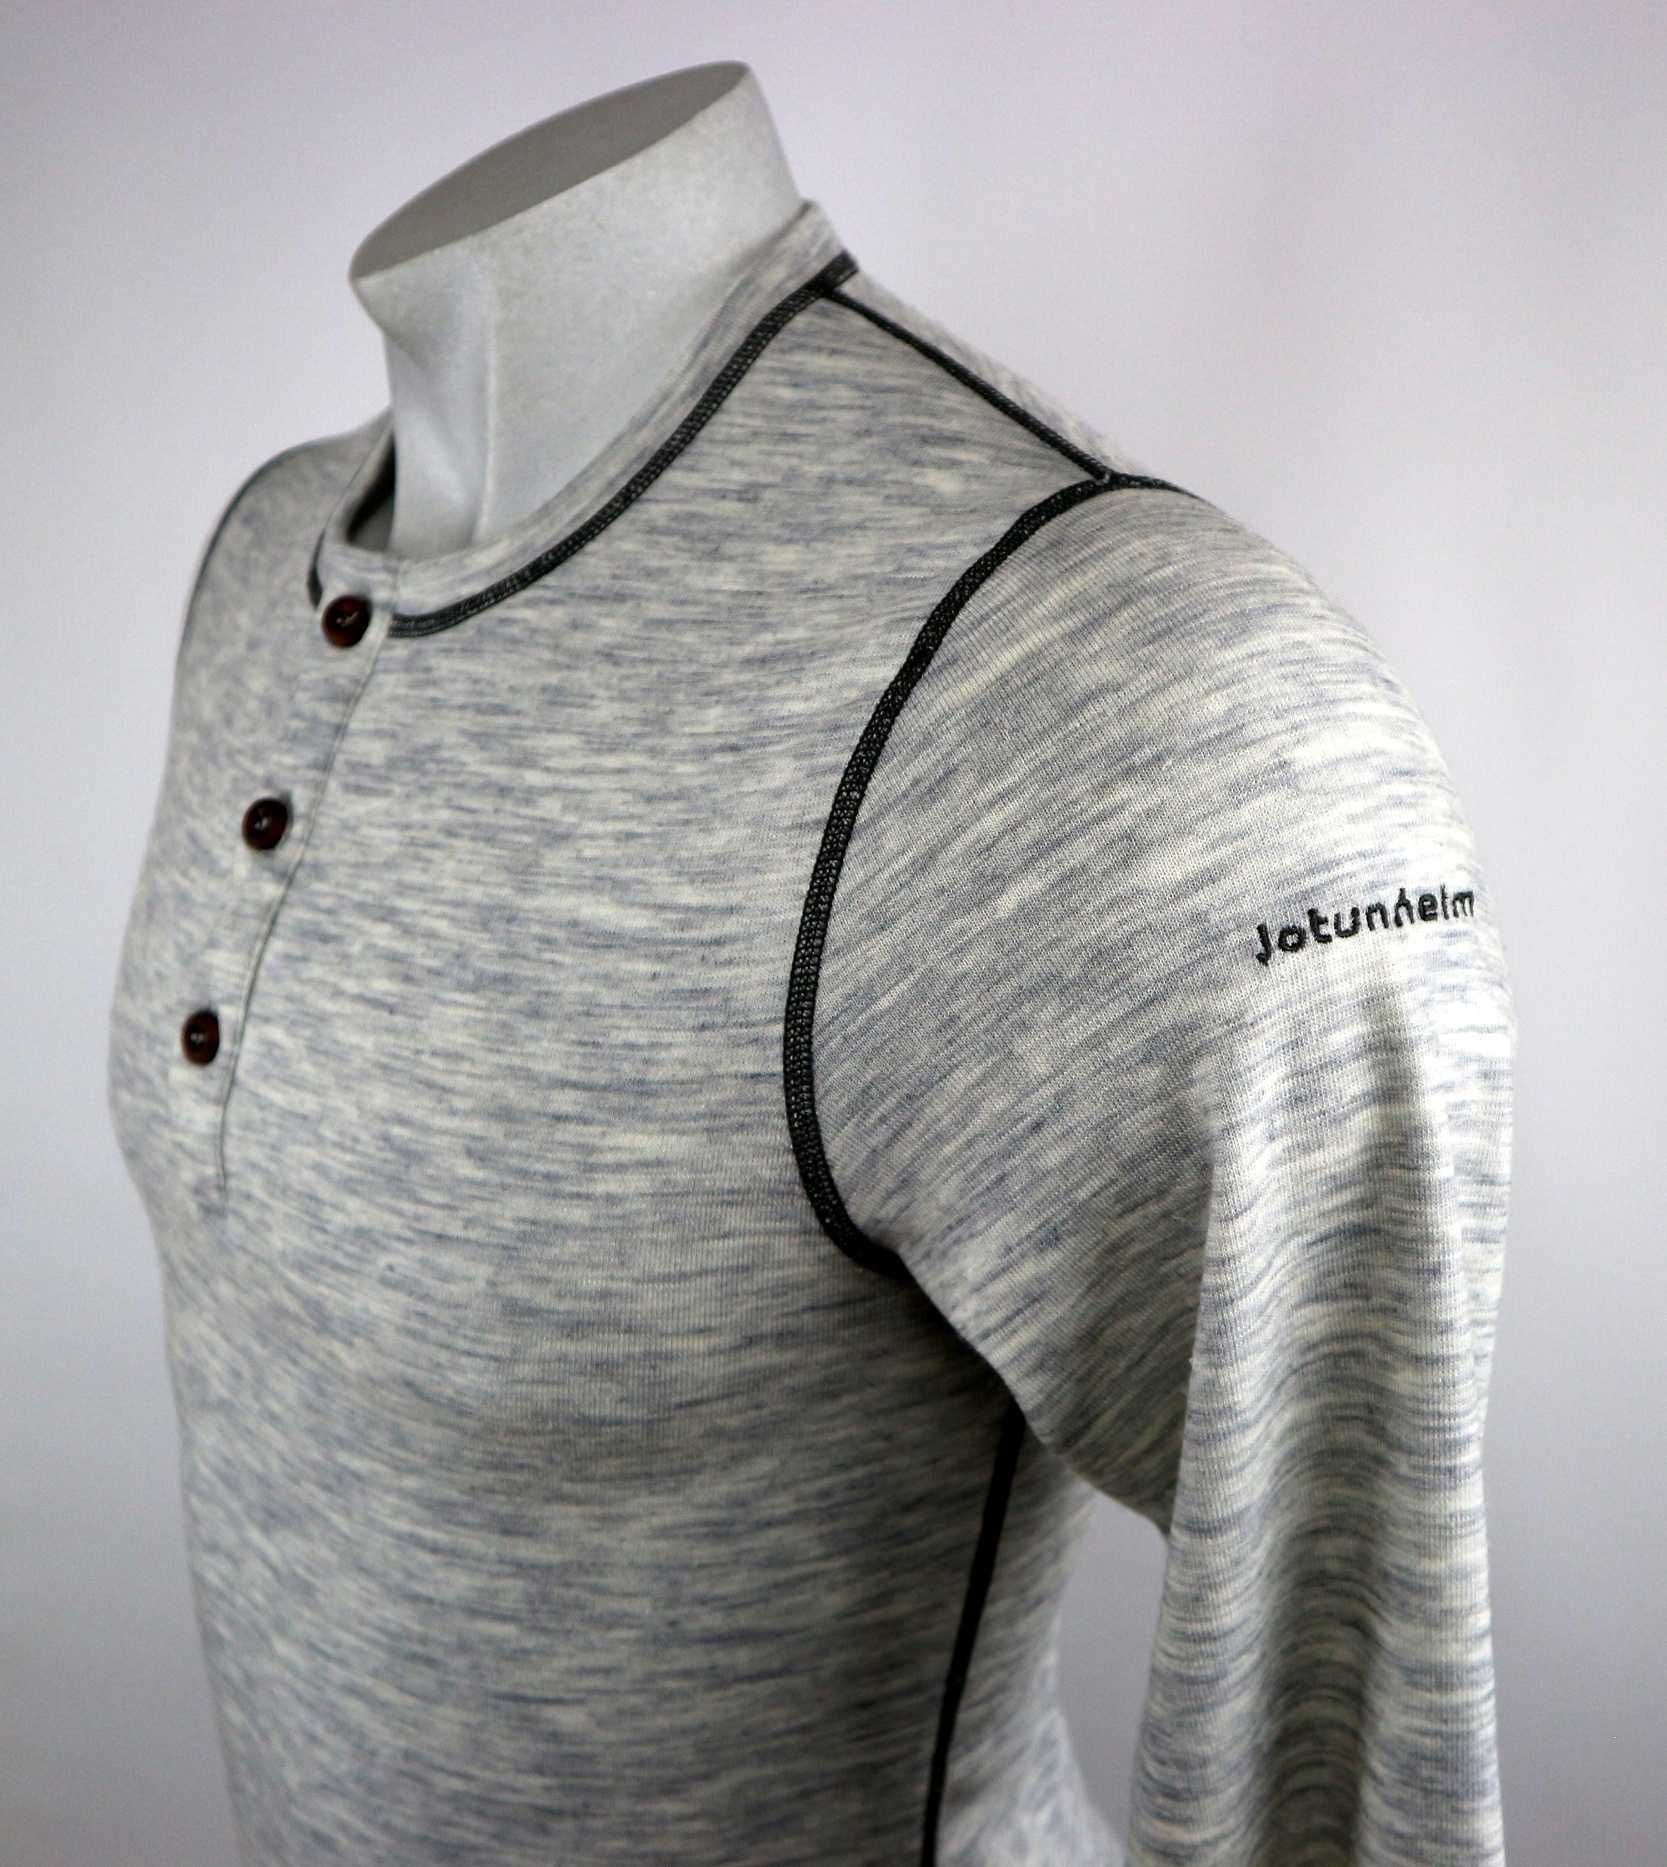 Jotunheim Sauho LS sweter outdoorowy 80% wełny merino M